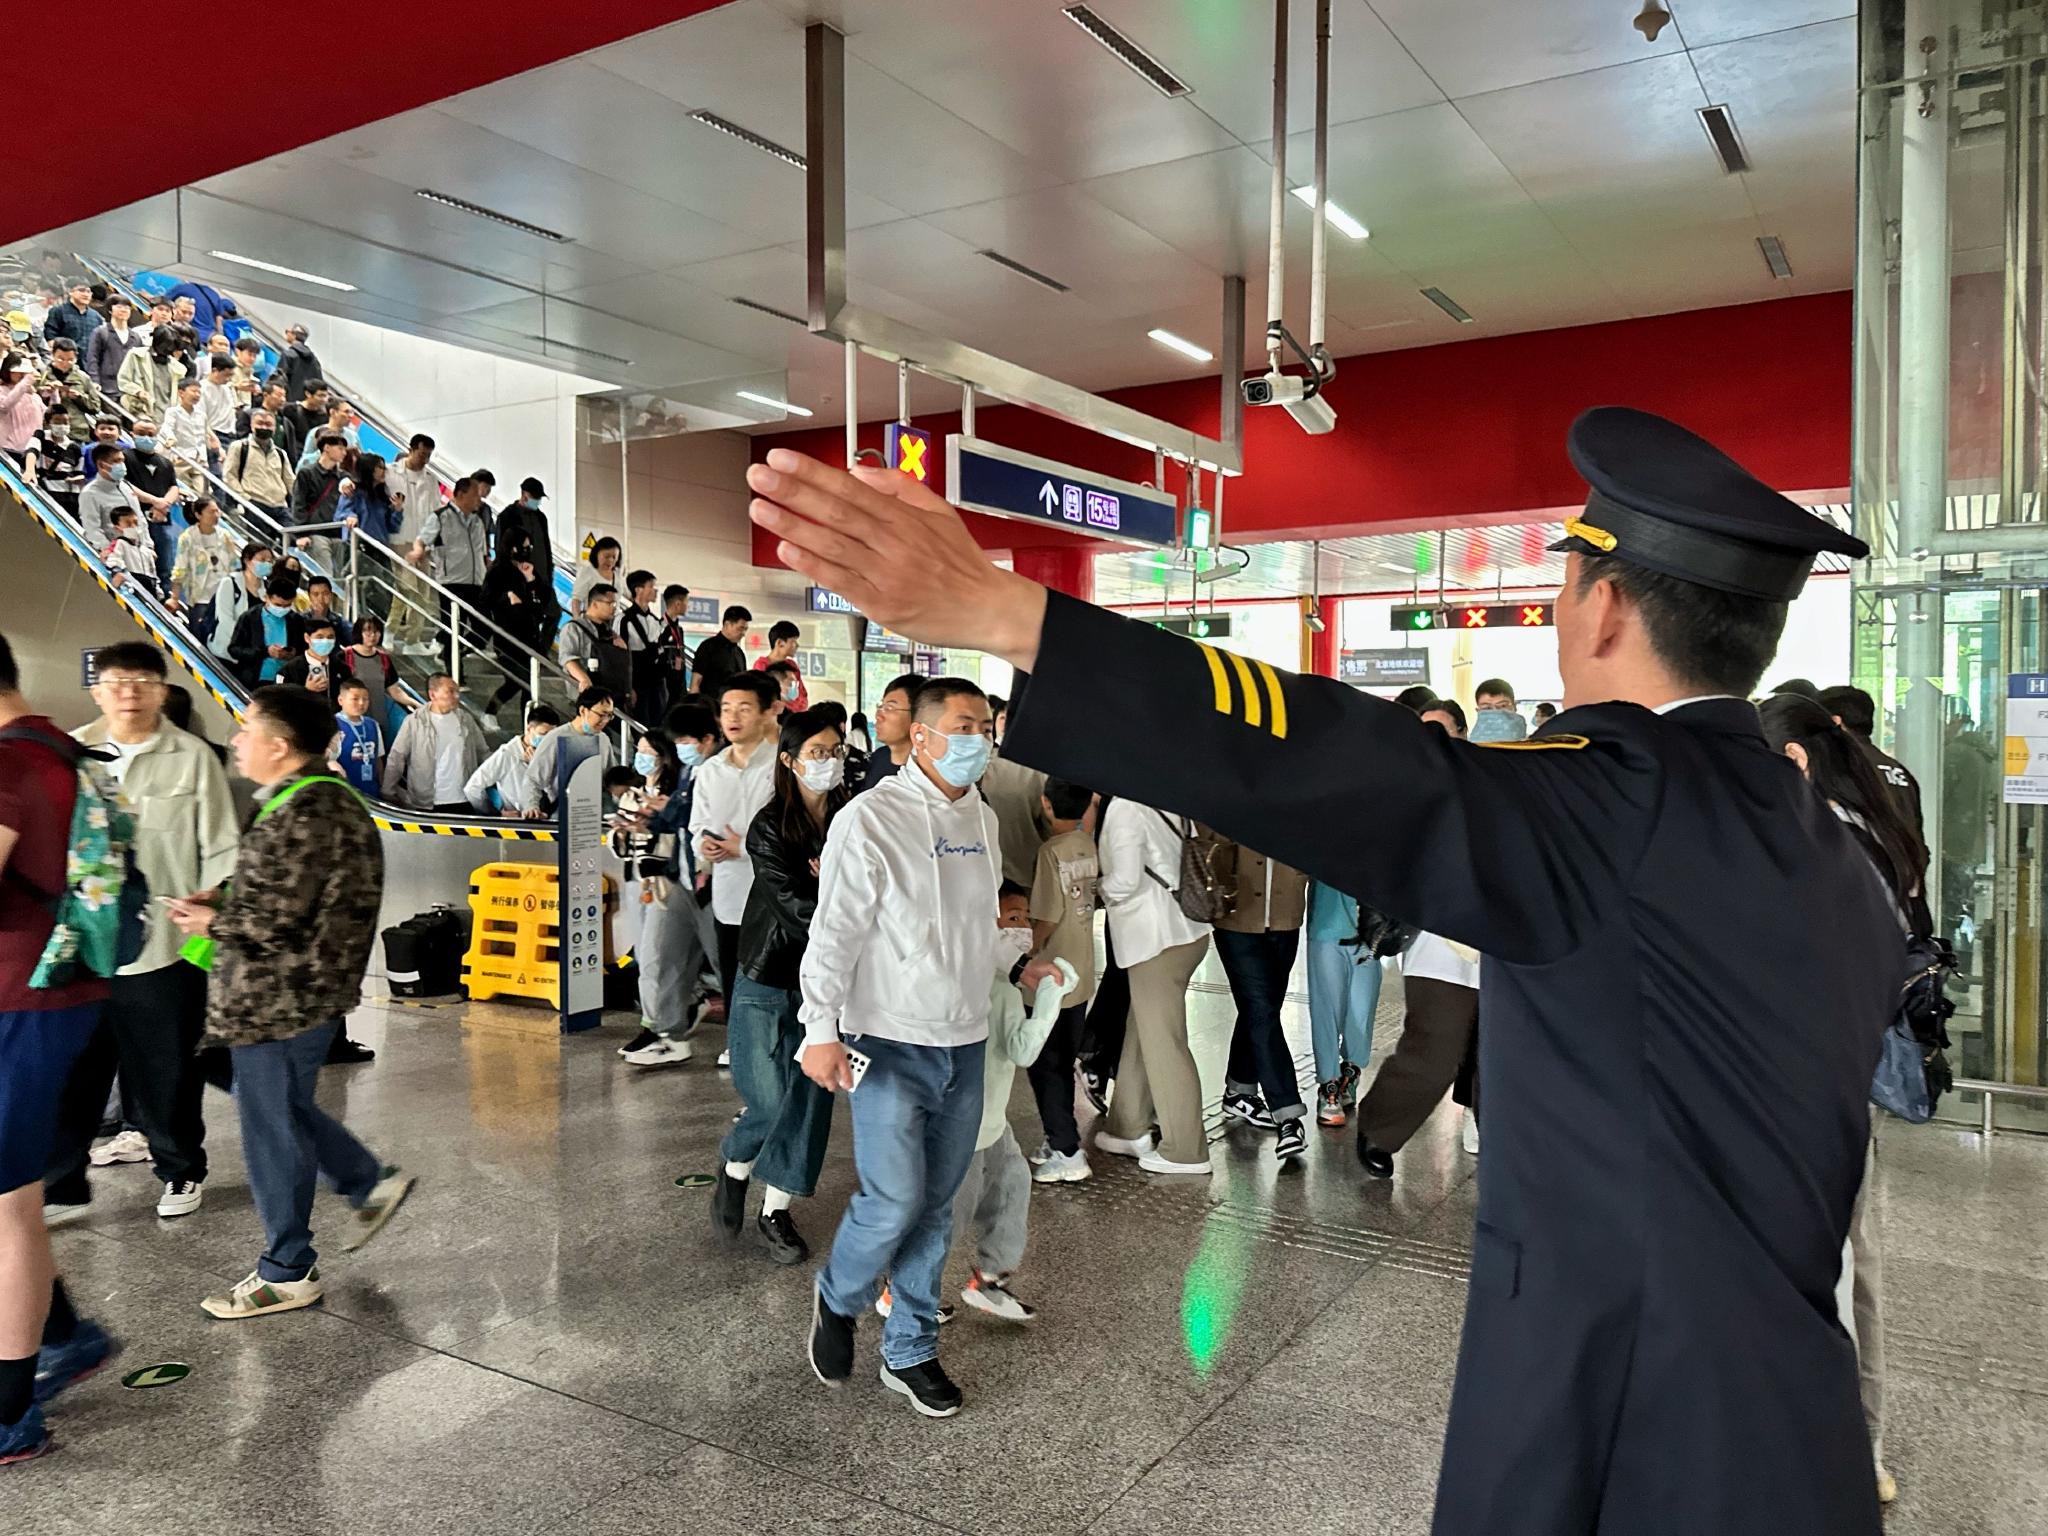 車站工作人員引導乘客有序出站。新京報記者 王貴彬 攝